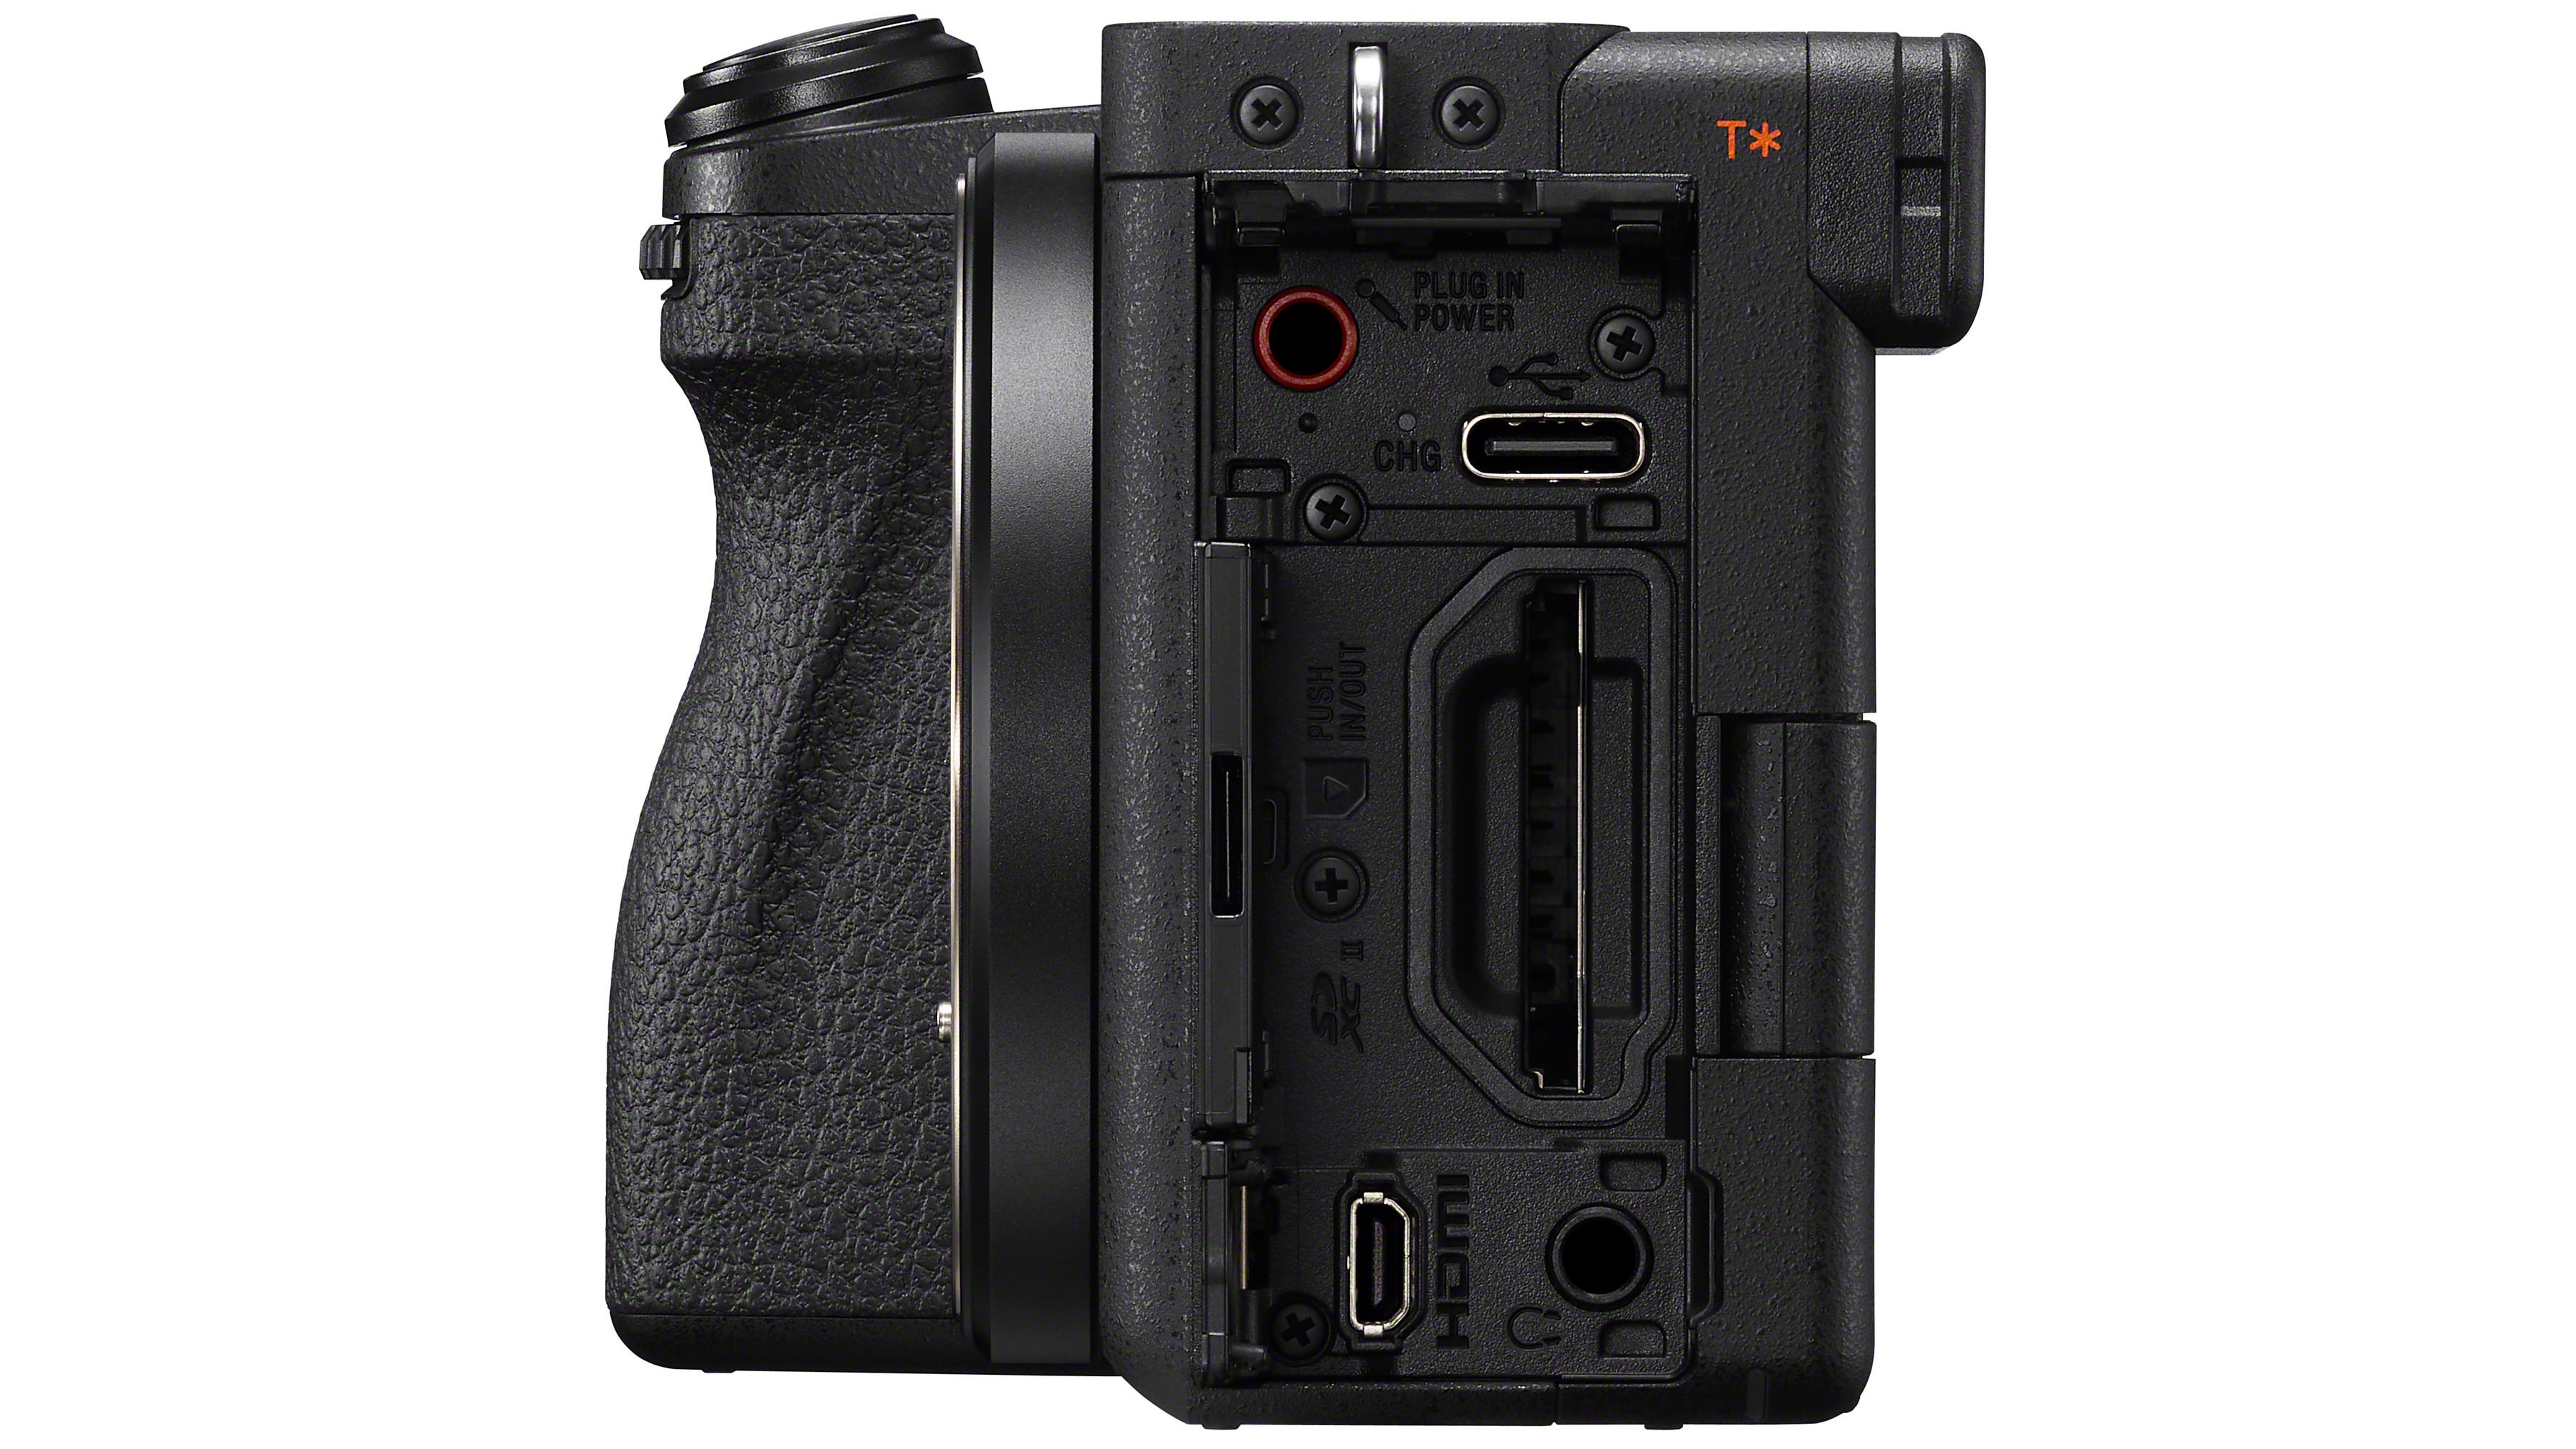 لقطة جانبية للكاميرا الرقمية Sony A6700 تظهر فتحة بطاقة SD التي تم تغيير موضعها.